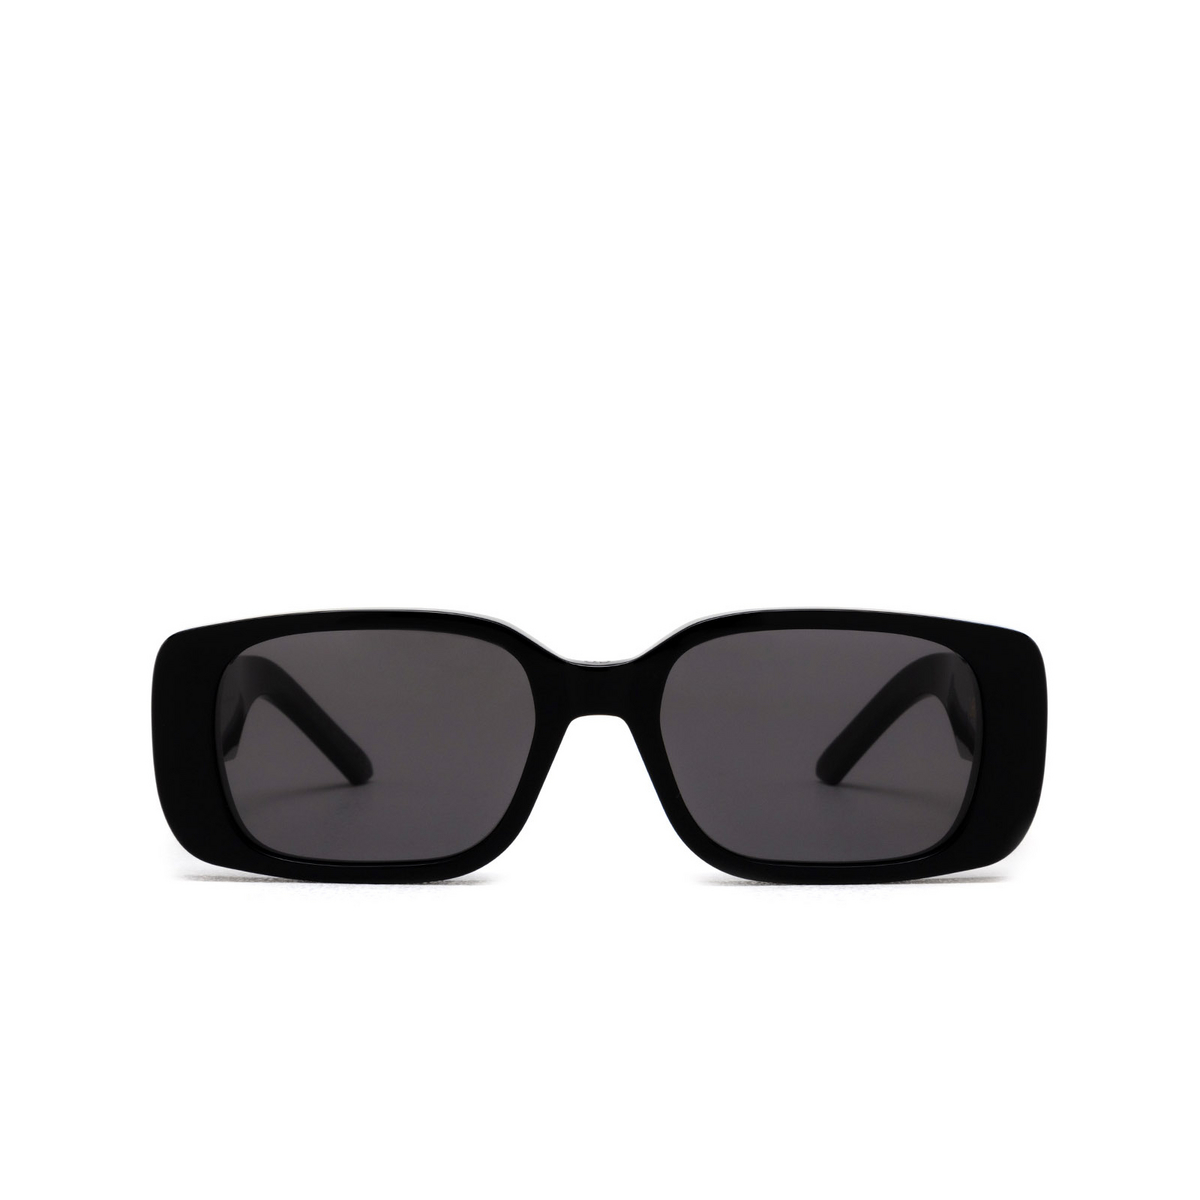 Sunglasses Dior WILDIOR S2U - Mia Burton